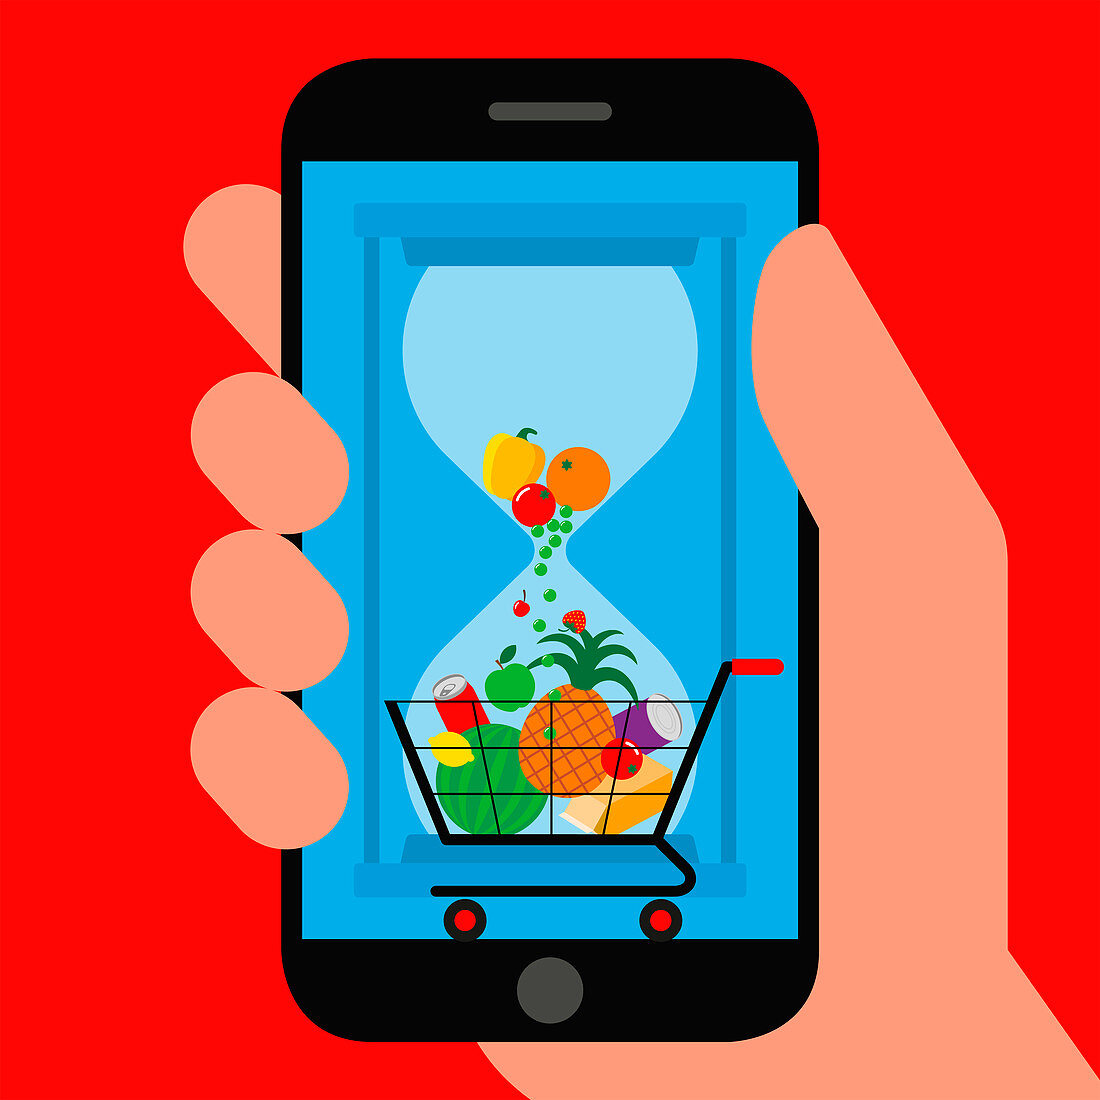 Food waste app, illustration